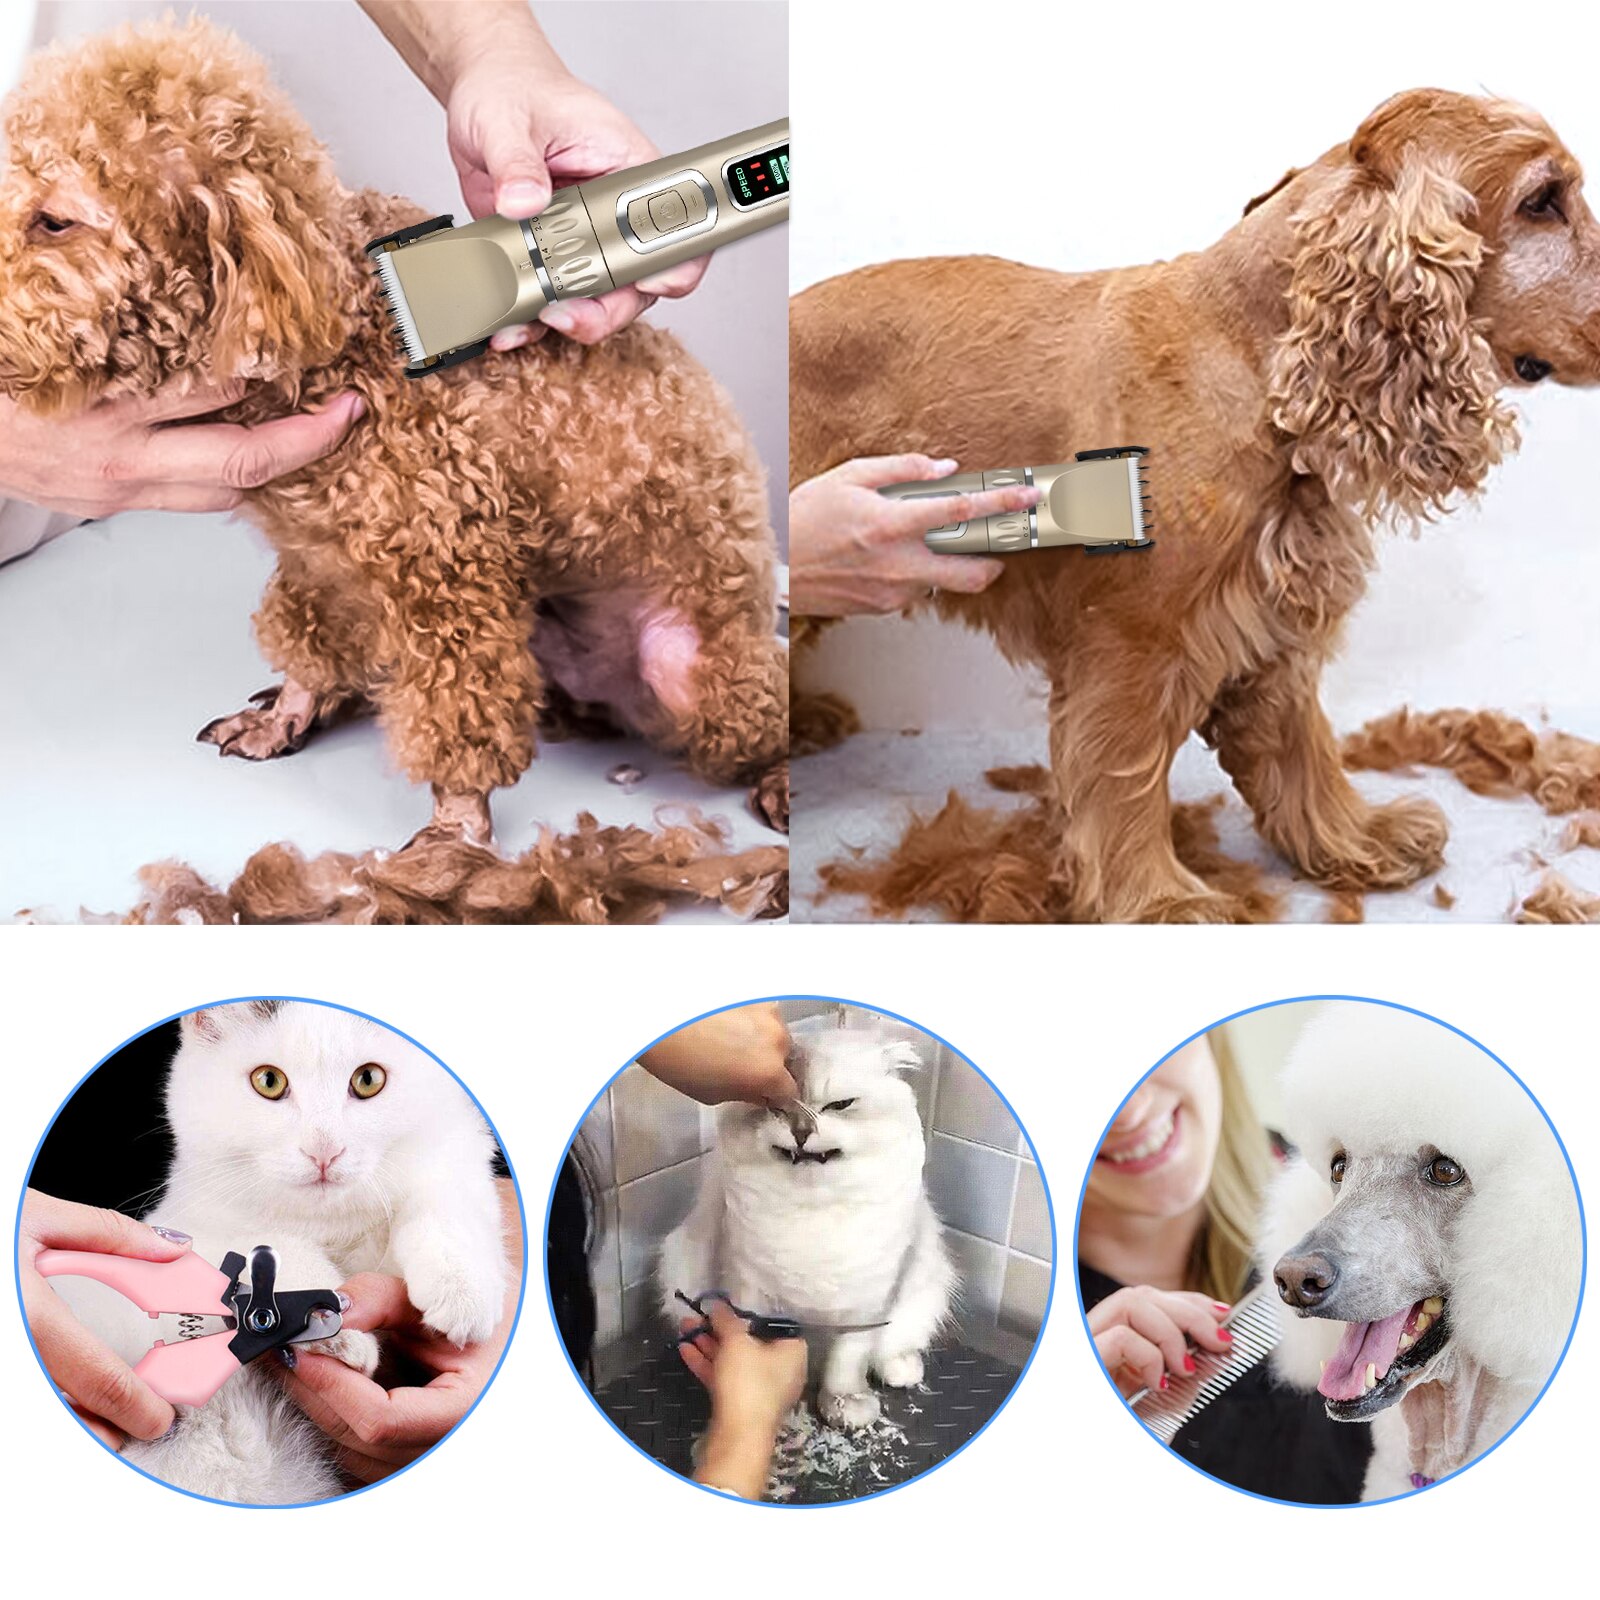 Proster kæledyr hund hårklipper trim klipper dyr hår elektrisk barbermaskine lcd display sæt